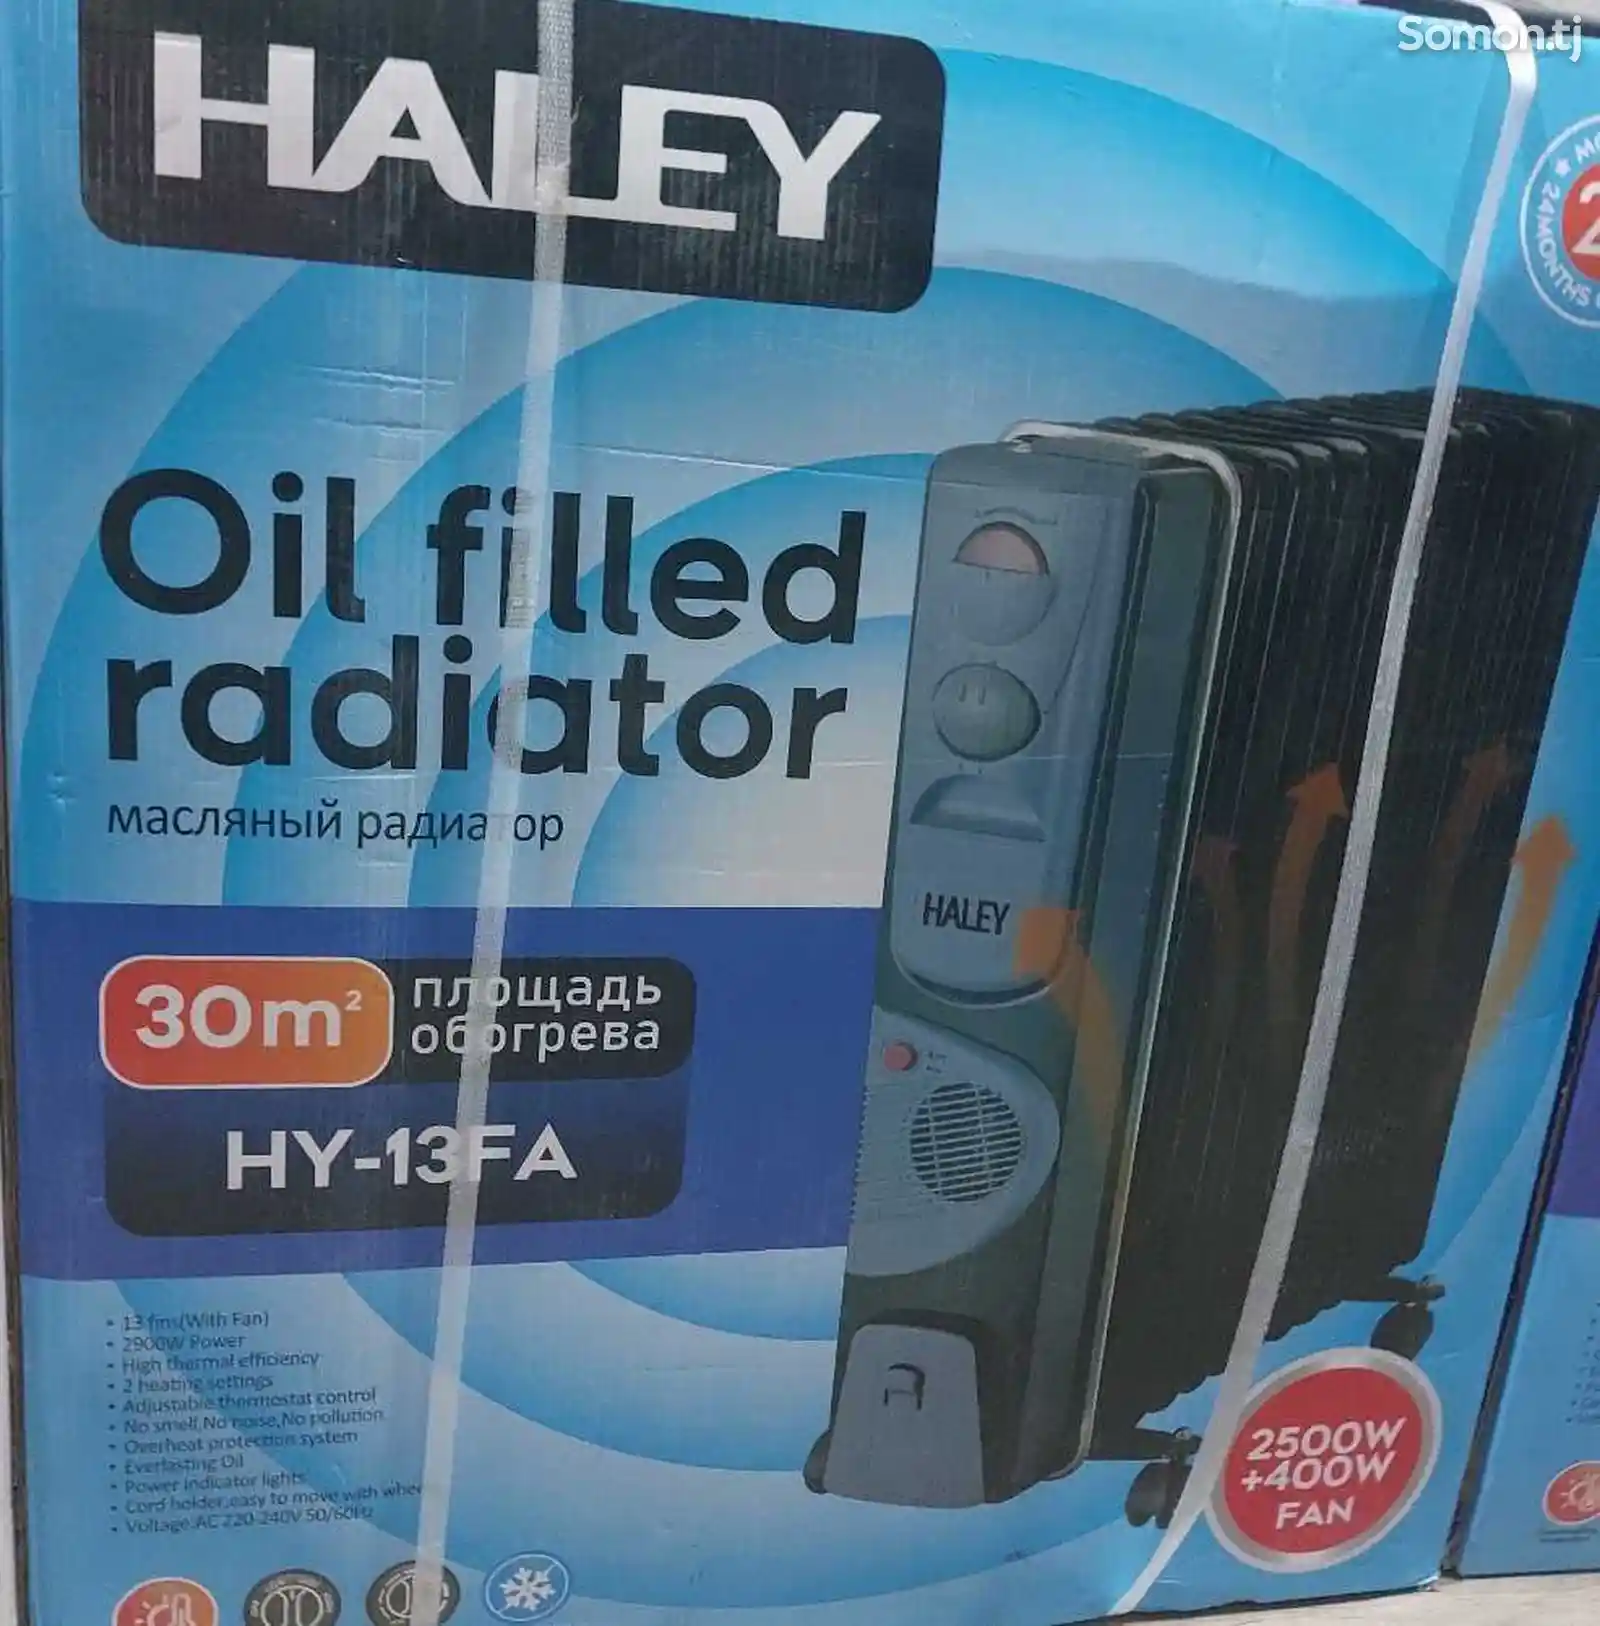 Радиатор Haley-11FB-1